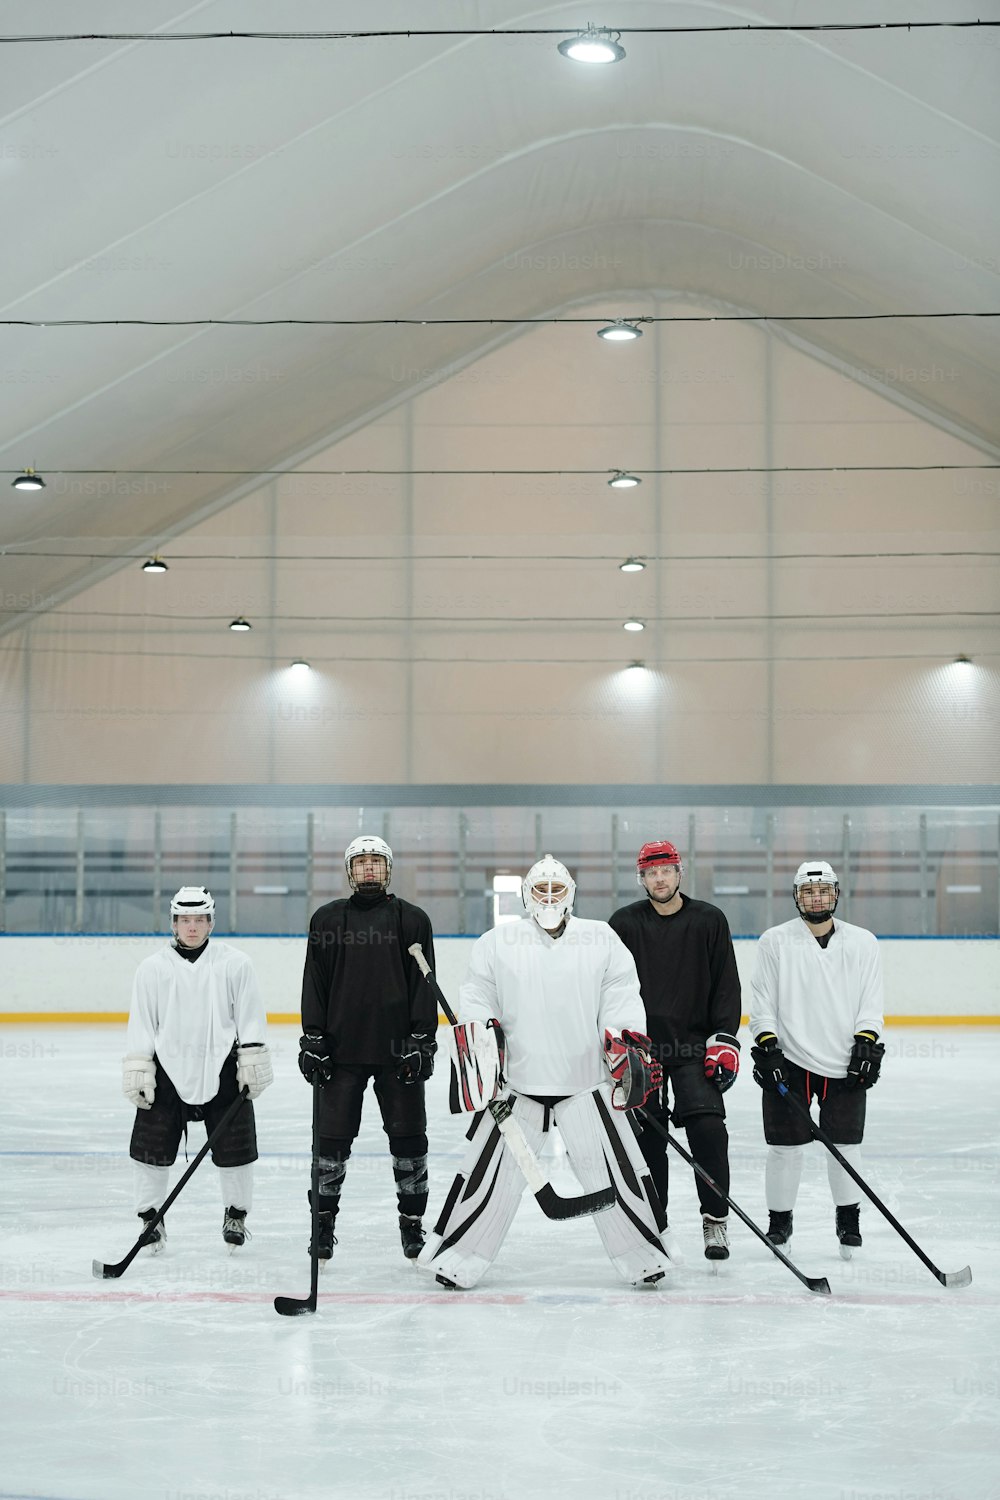 Gruppe von Hockeyspielern und ihrem Trainer in Sportuniform, Handschuhen, Schlittschuhen und Schutzhelmen, die auf der Eisbahn stehen und auf das Spiel warten